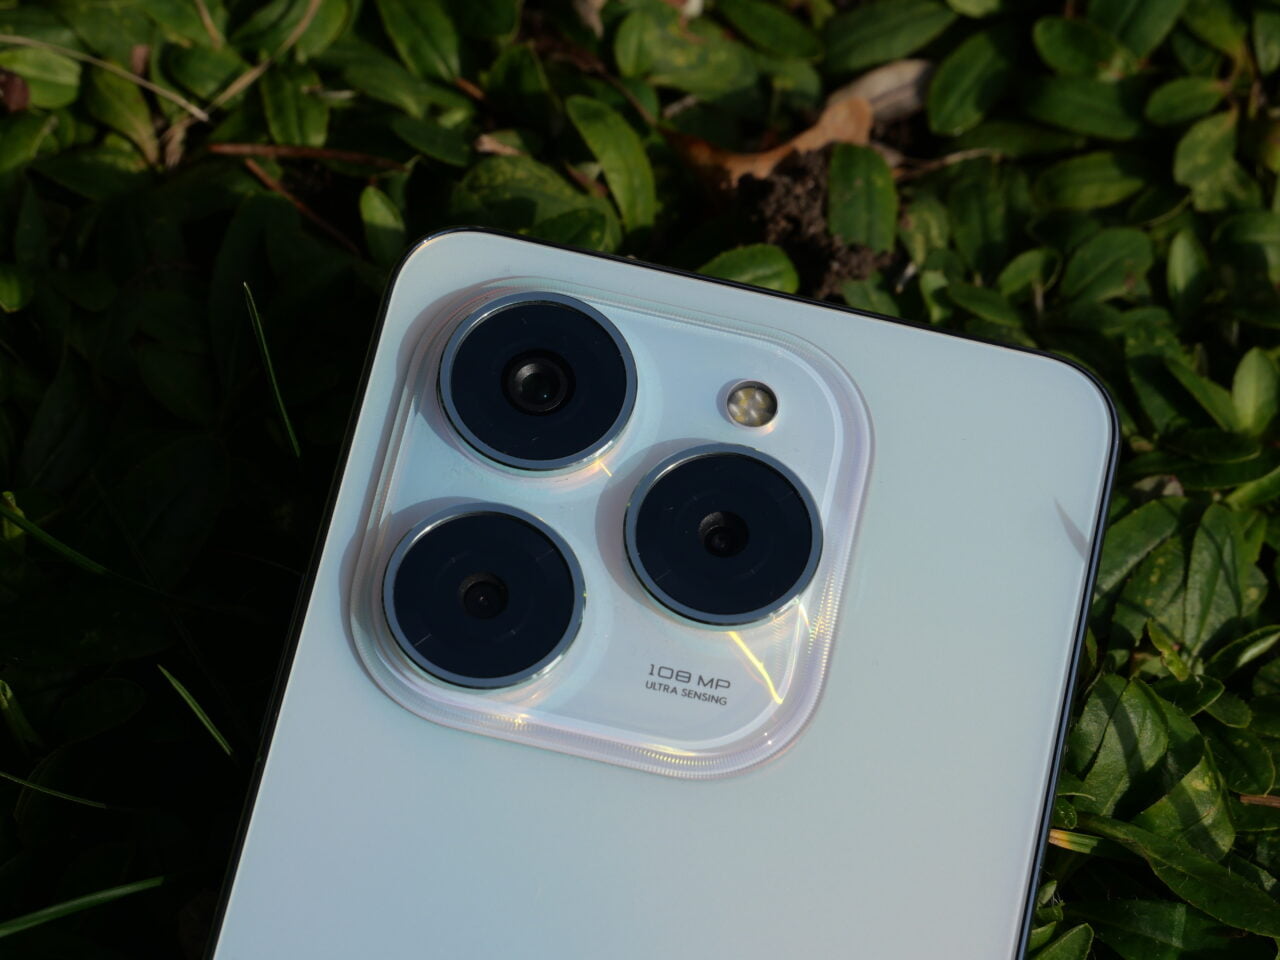 Smartfon leżący na liściach, ukazujący szczegół aparatu z trzema obiektywami i etykietą "108 MP ULTRA SENSING".